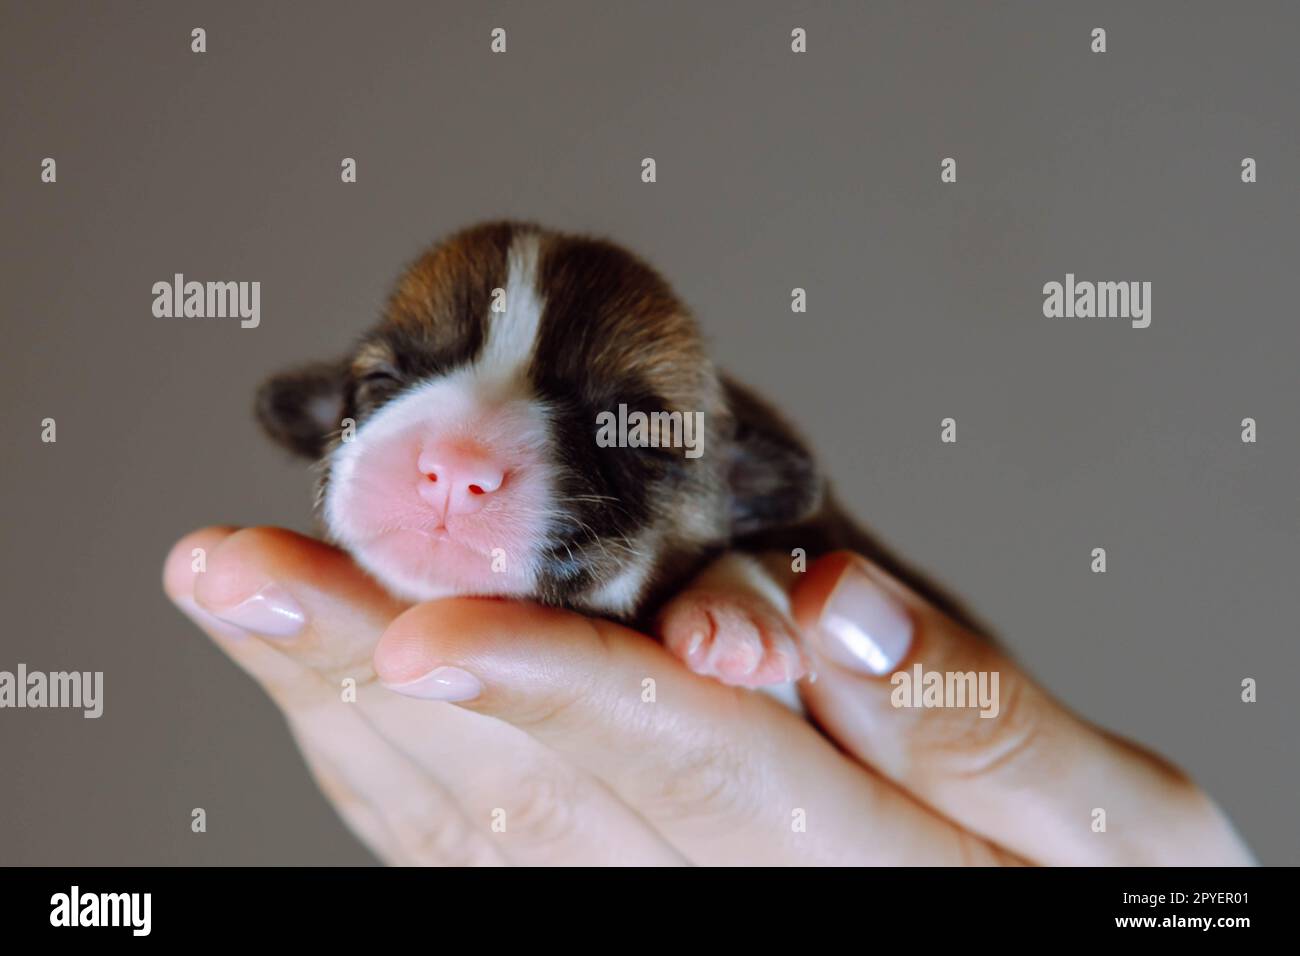 Donna irriconoscibile a mano trasporta un piccolo cucciolo di corgi con occhi ravvicinati vicino alla fotocamera su sfondo grigio. Animale neonato Foto Stock